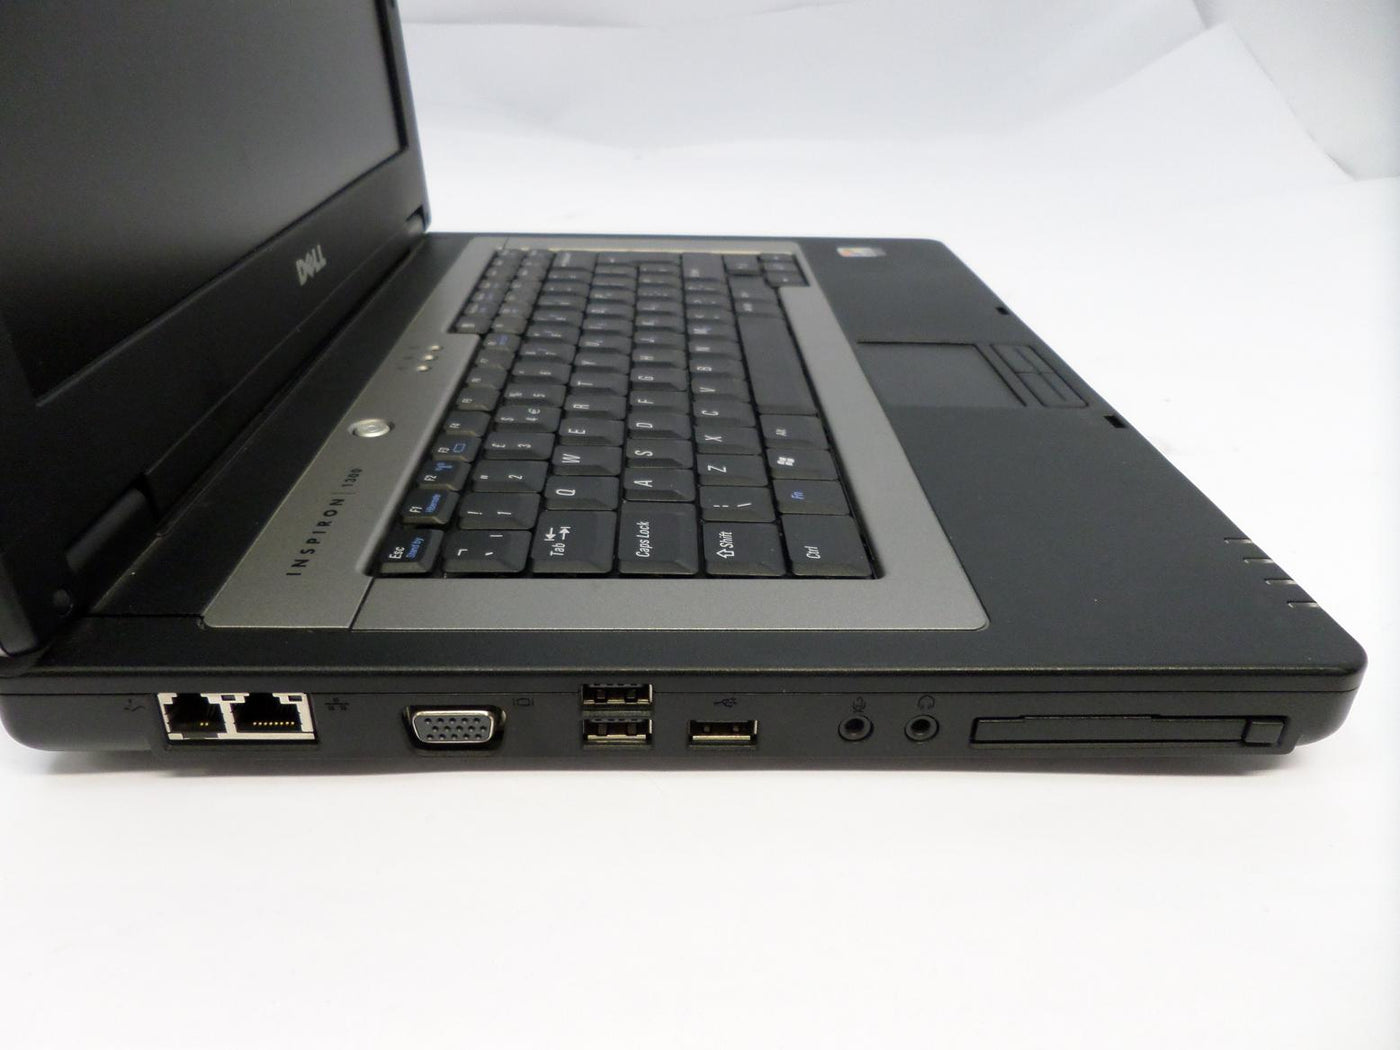 PR24771_PP21L_Dell Inspiron 1300 Celeron 1.6GHz Laptop - Image4